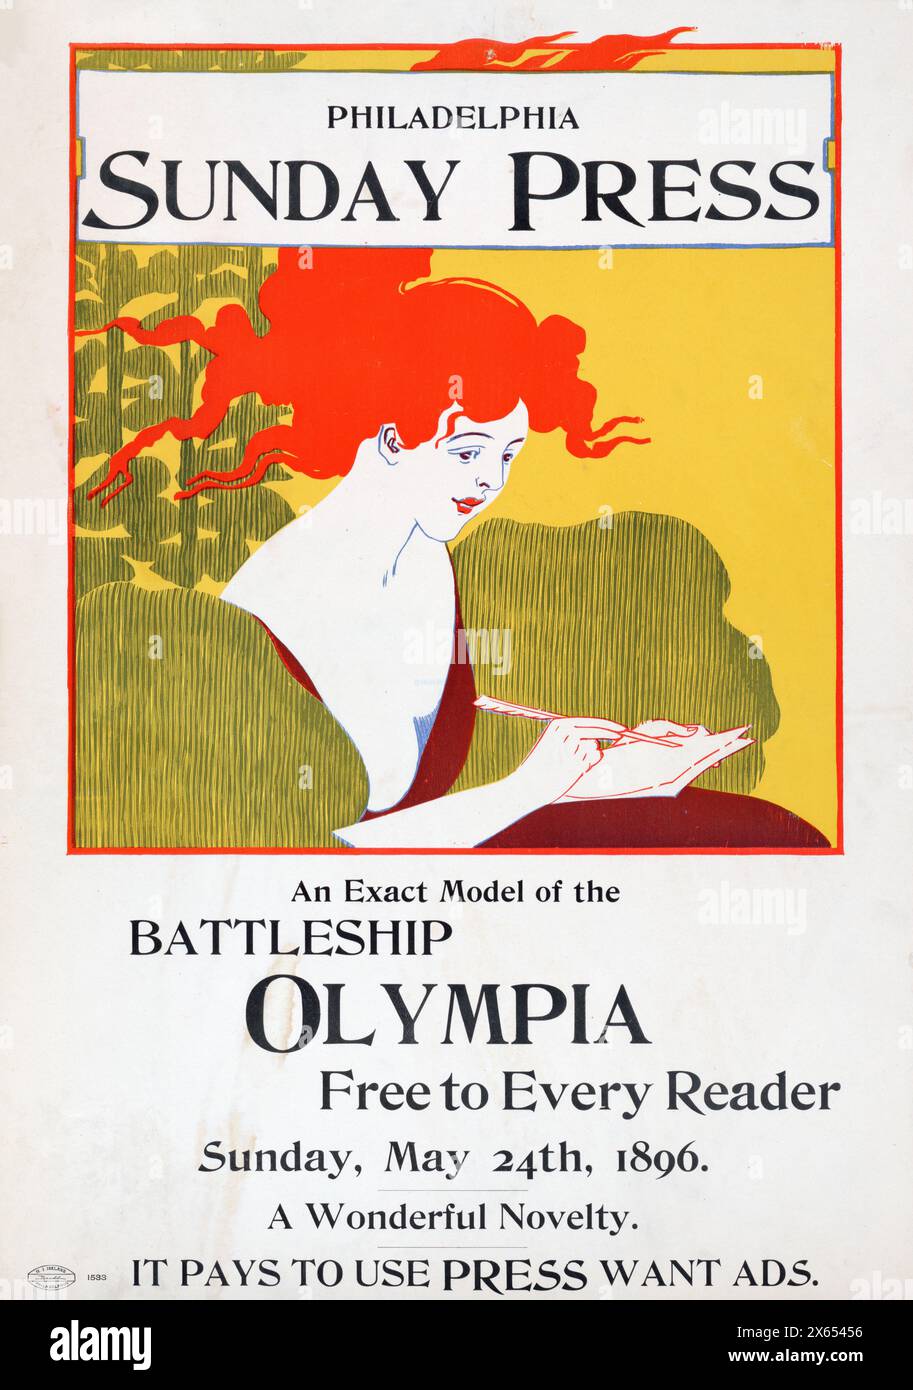 George Reiter Brill (illustratore americano, 1867-1918) Philadelphia Sunday Press, un modello esatto della corazzata Olympia gratuito per ogni lettore, domenica 24 maggio 1896. Foto Stock